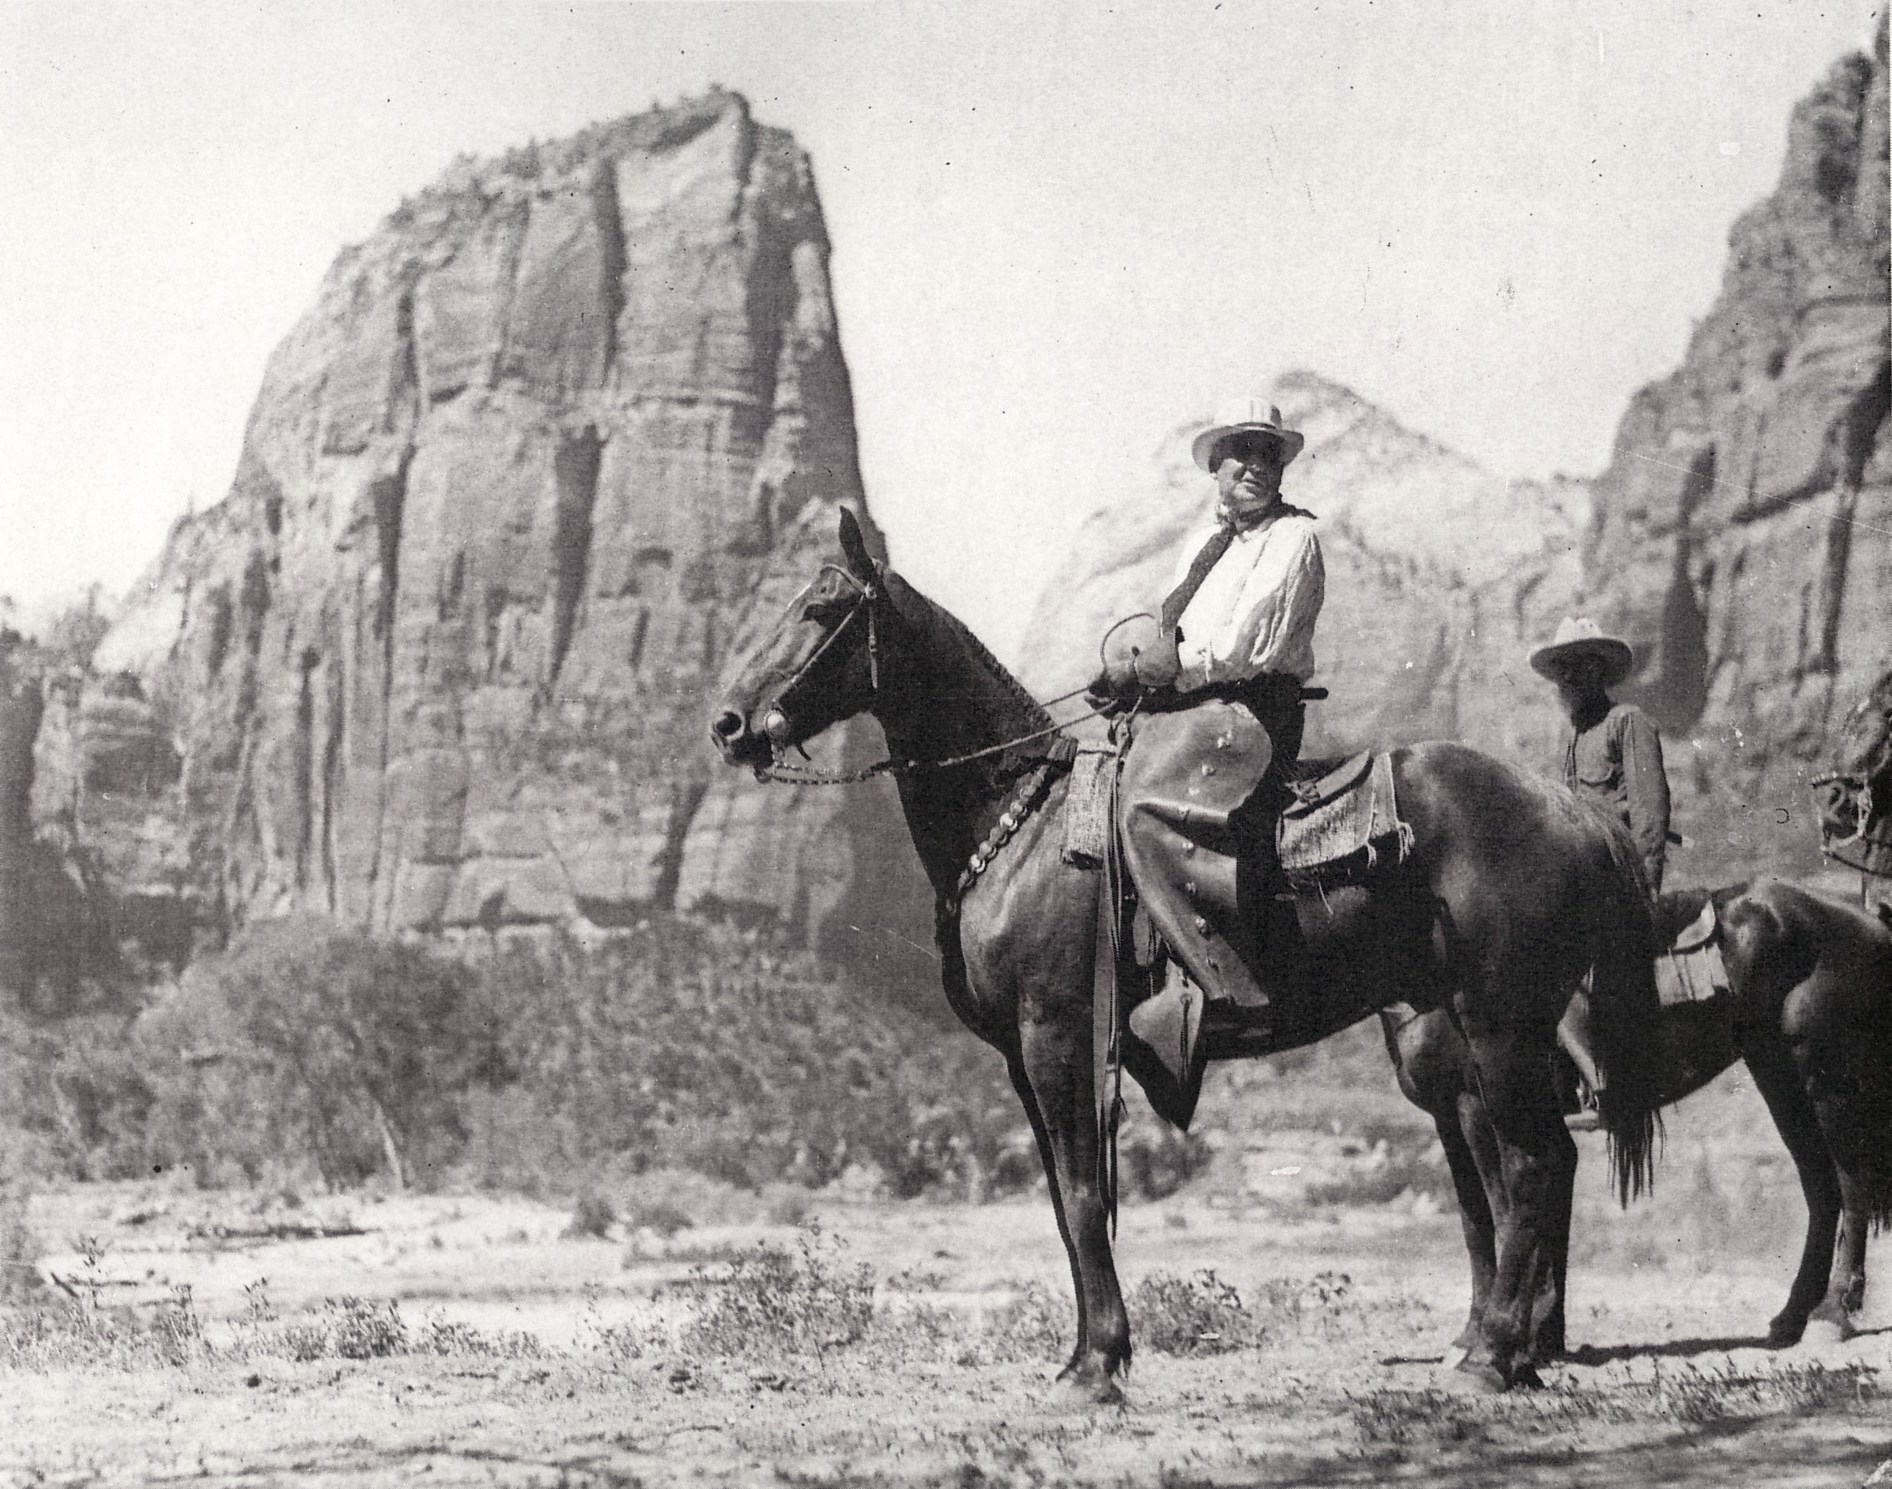 President Harding on horseback in Zion National Park